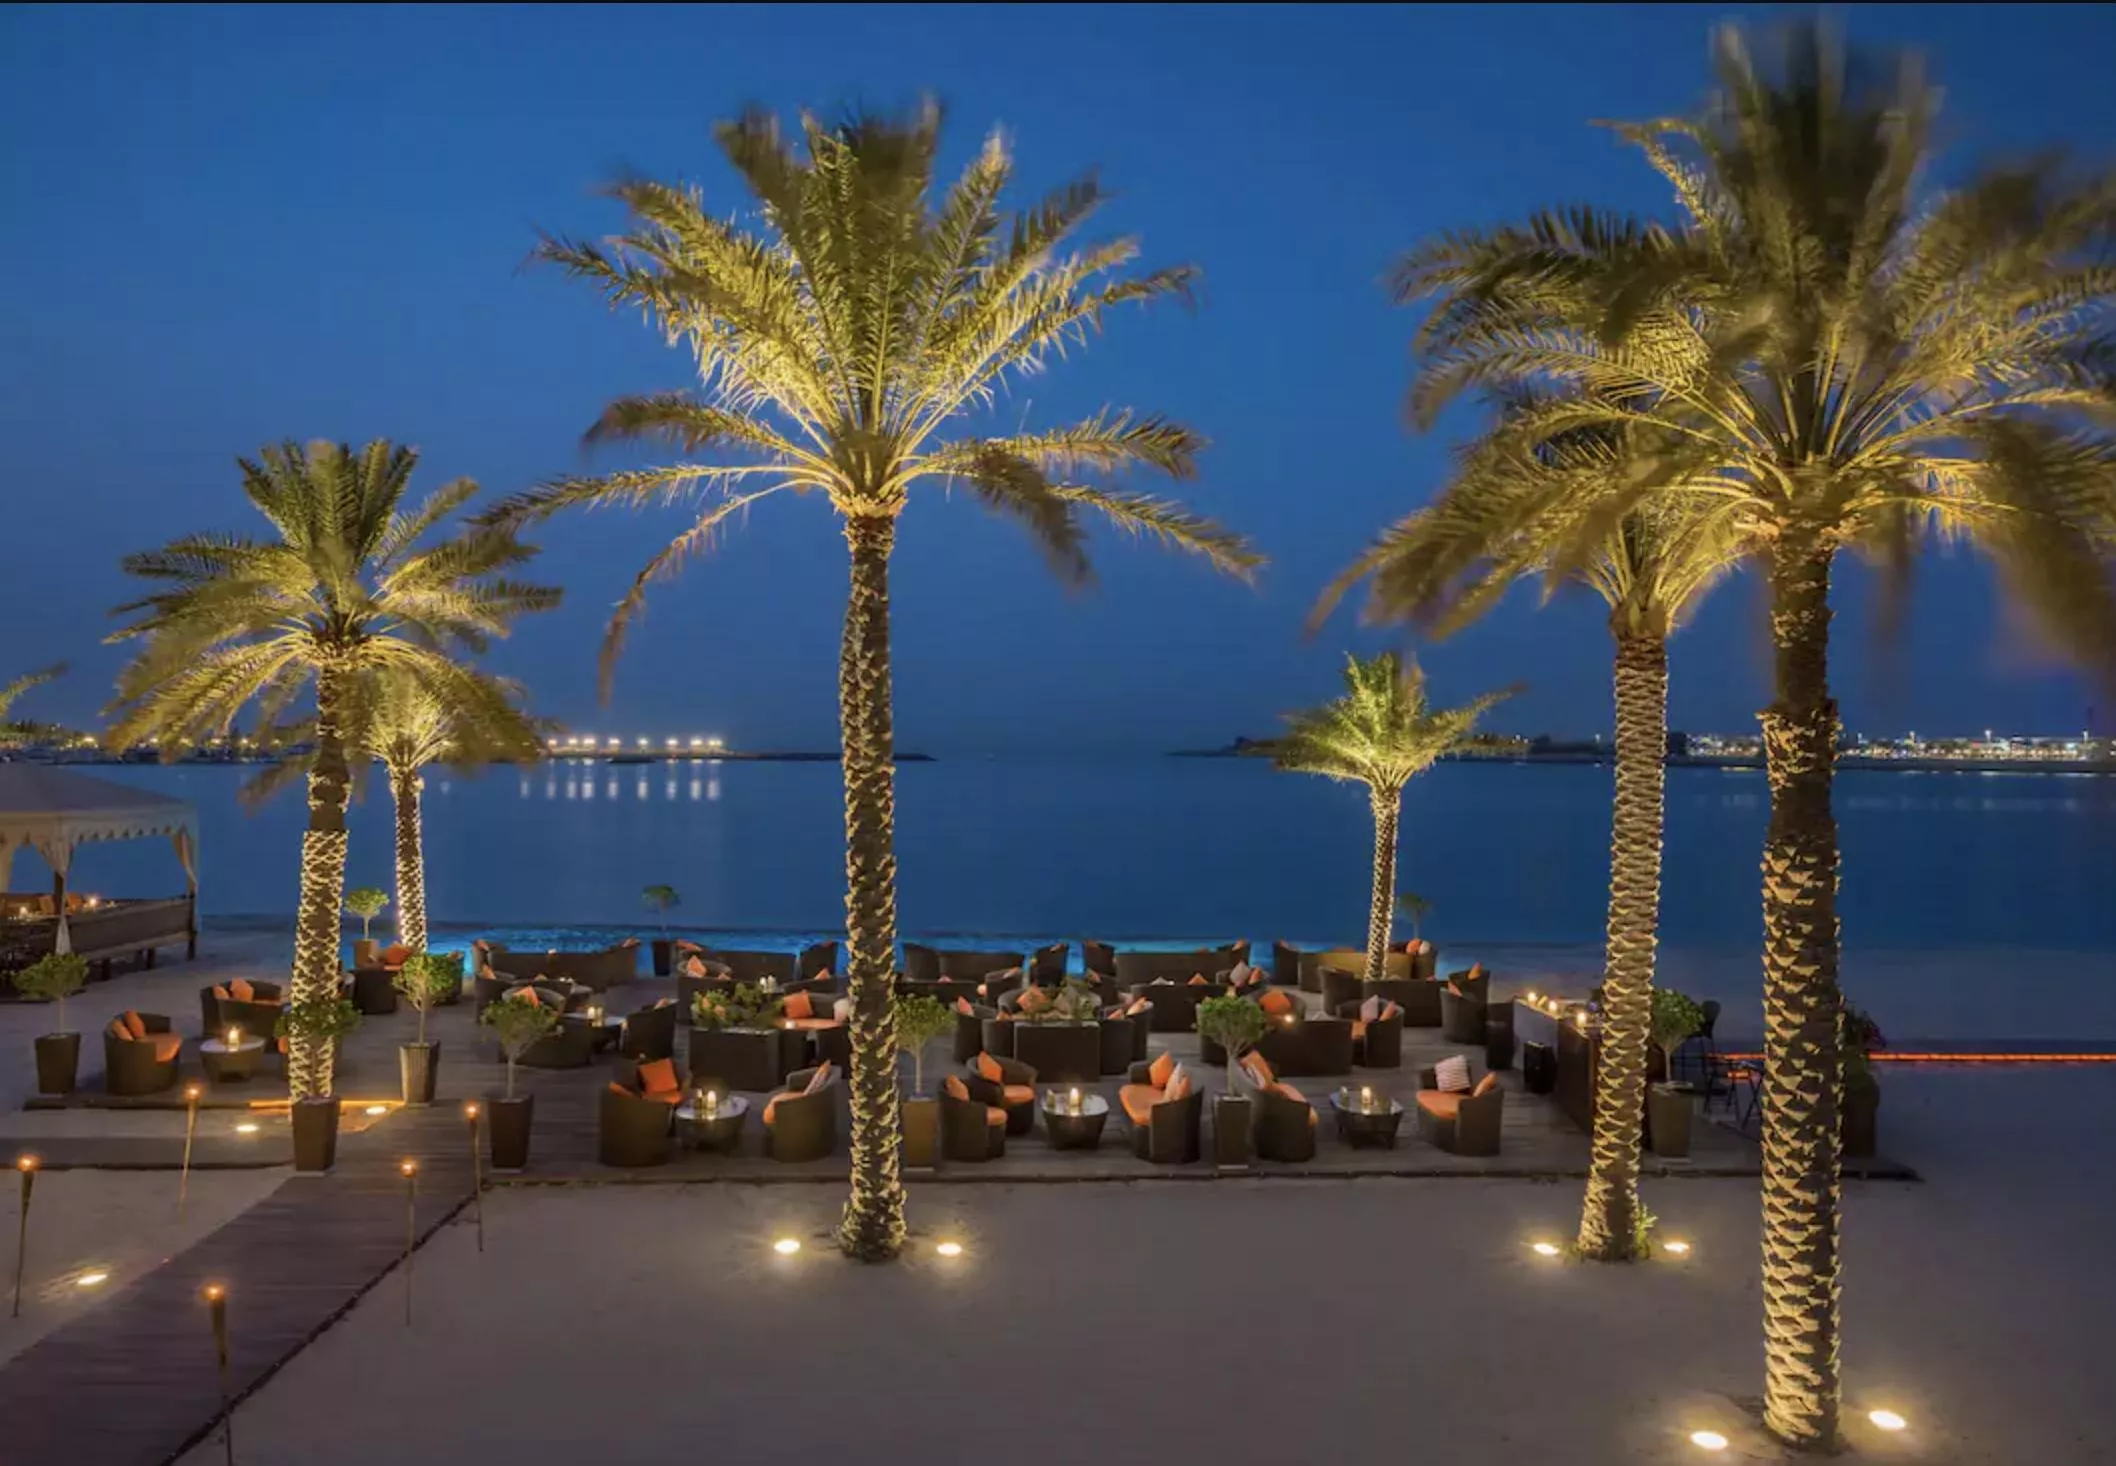 افضل 9 مطاعم في ابو ظبي تضمن لكِ أجواء رومانسية